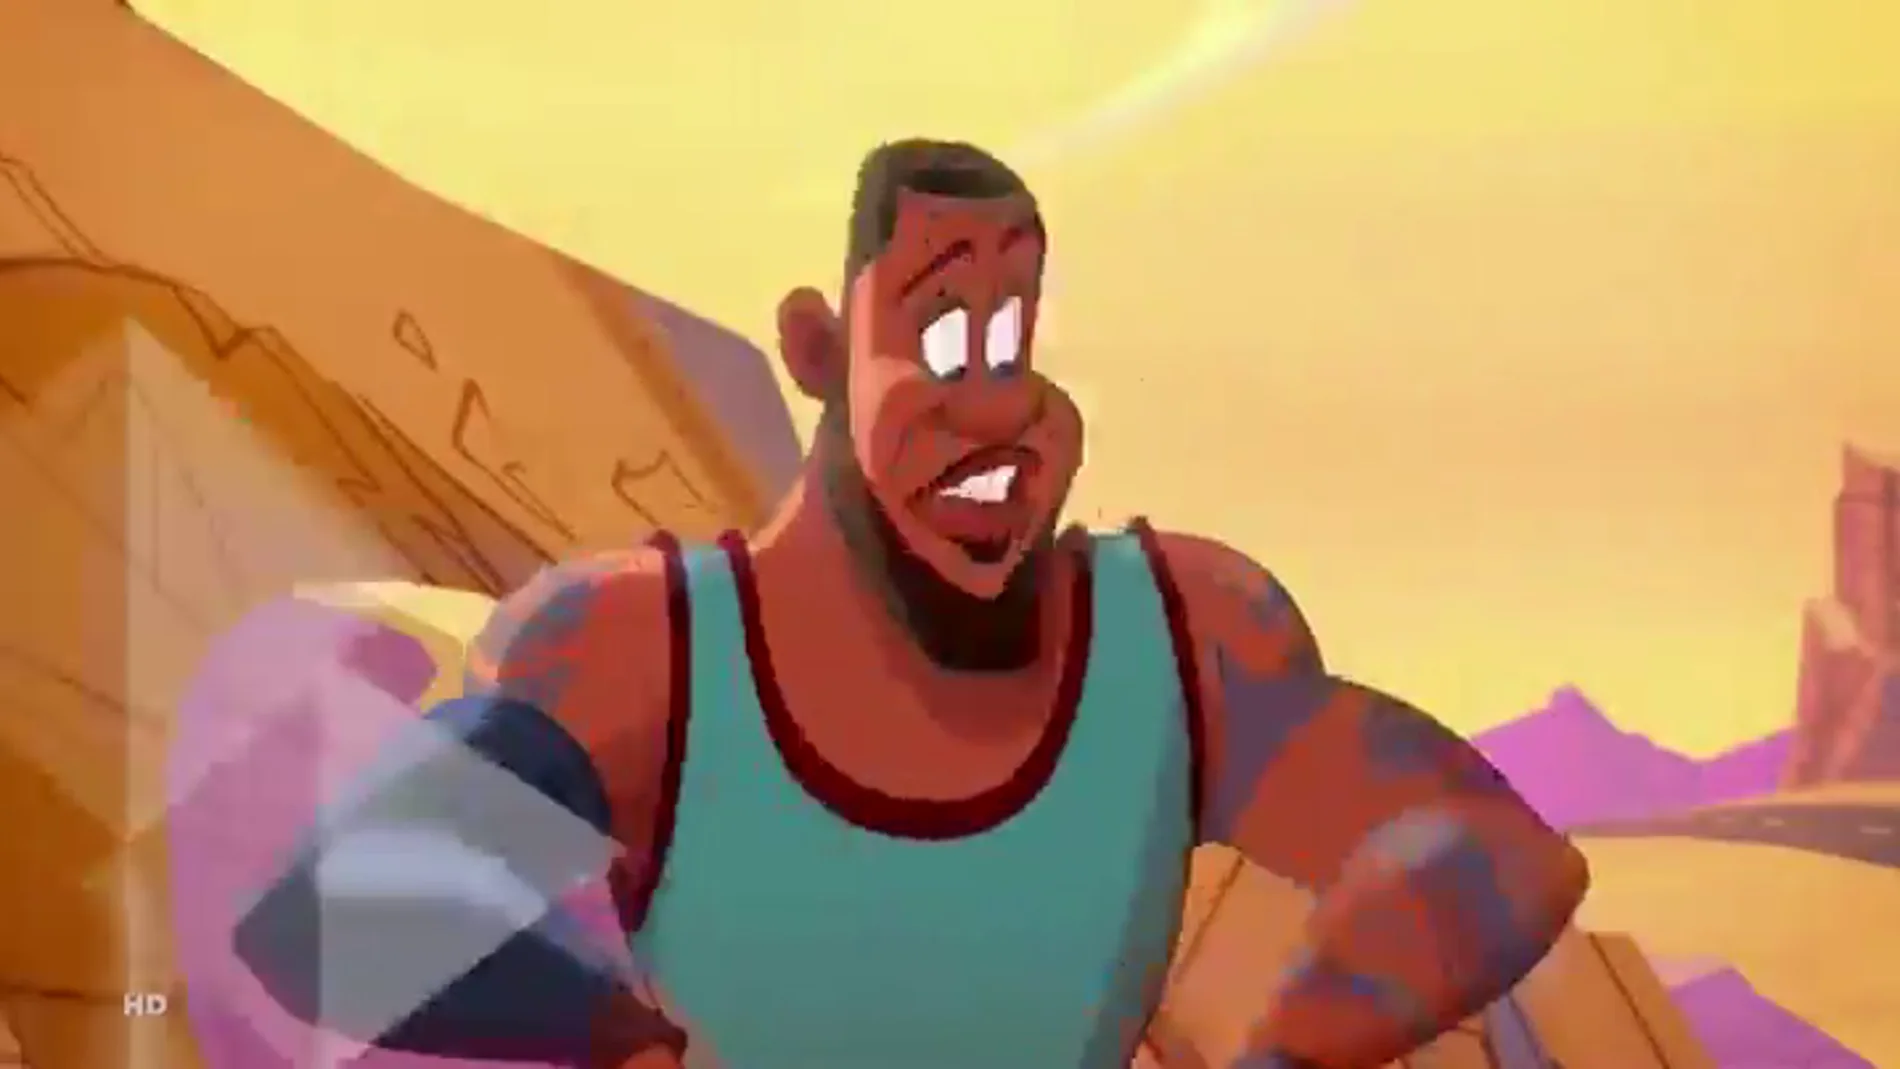 LeBron James convertido en dibujo animado: así es el esperado trailer de Space Jam 2